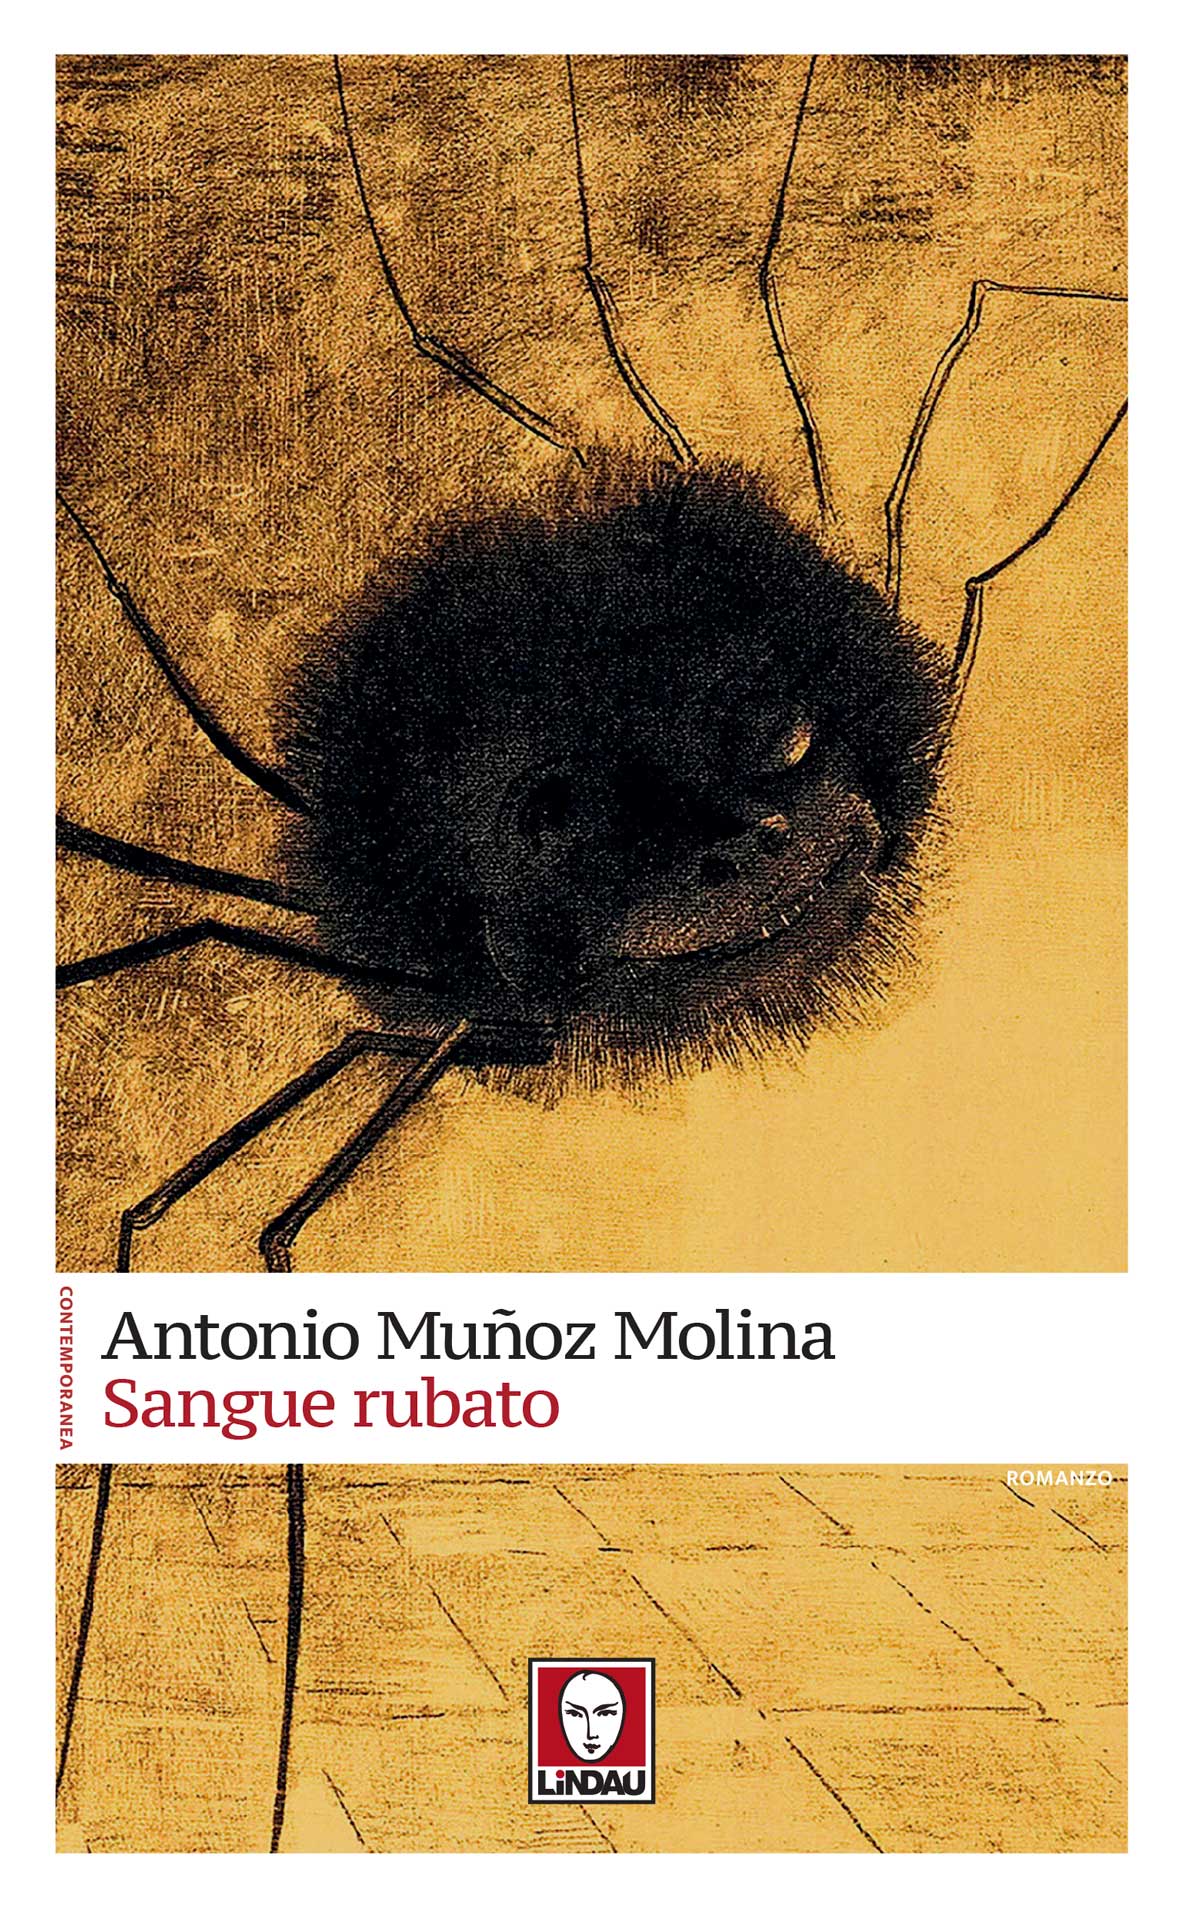 La paura dei bambini raccontata dai bambini: “Sangue rubato” di Antonio Muñoz Molina